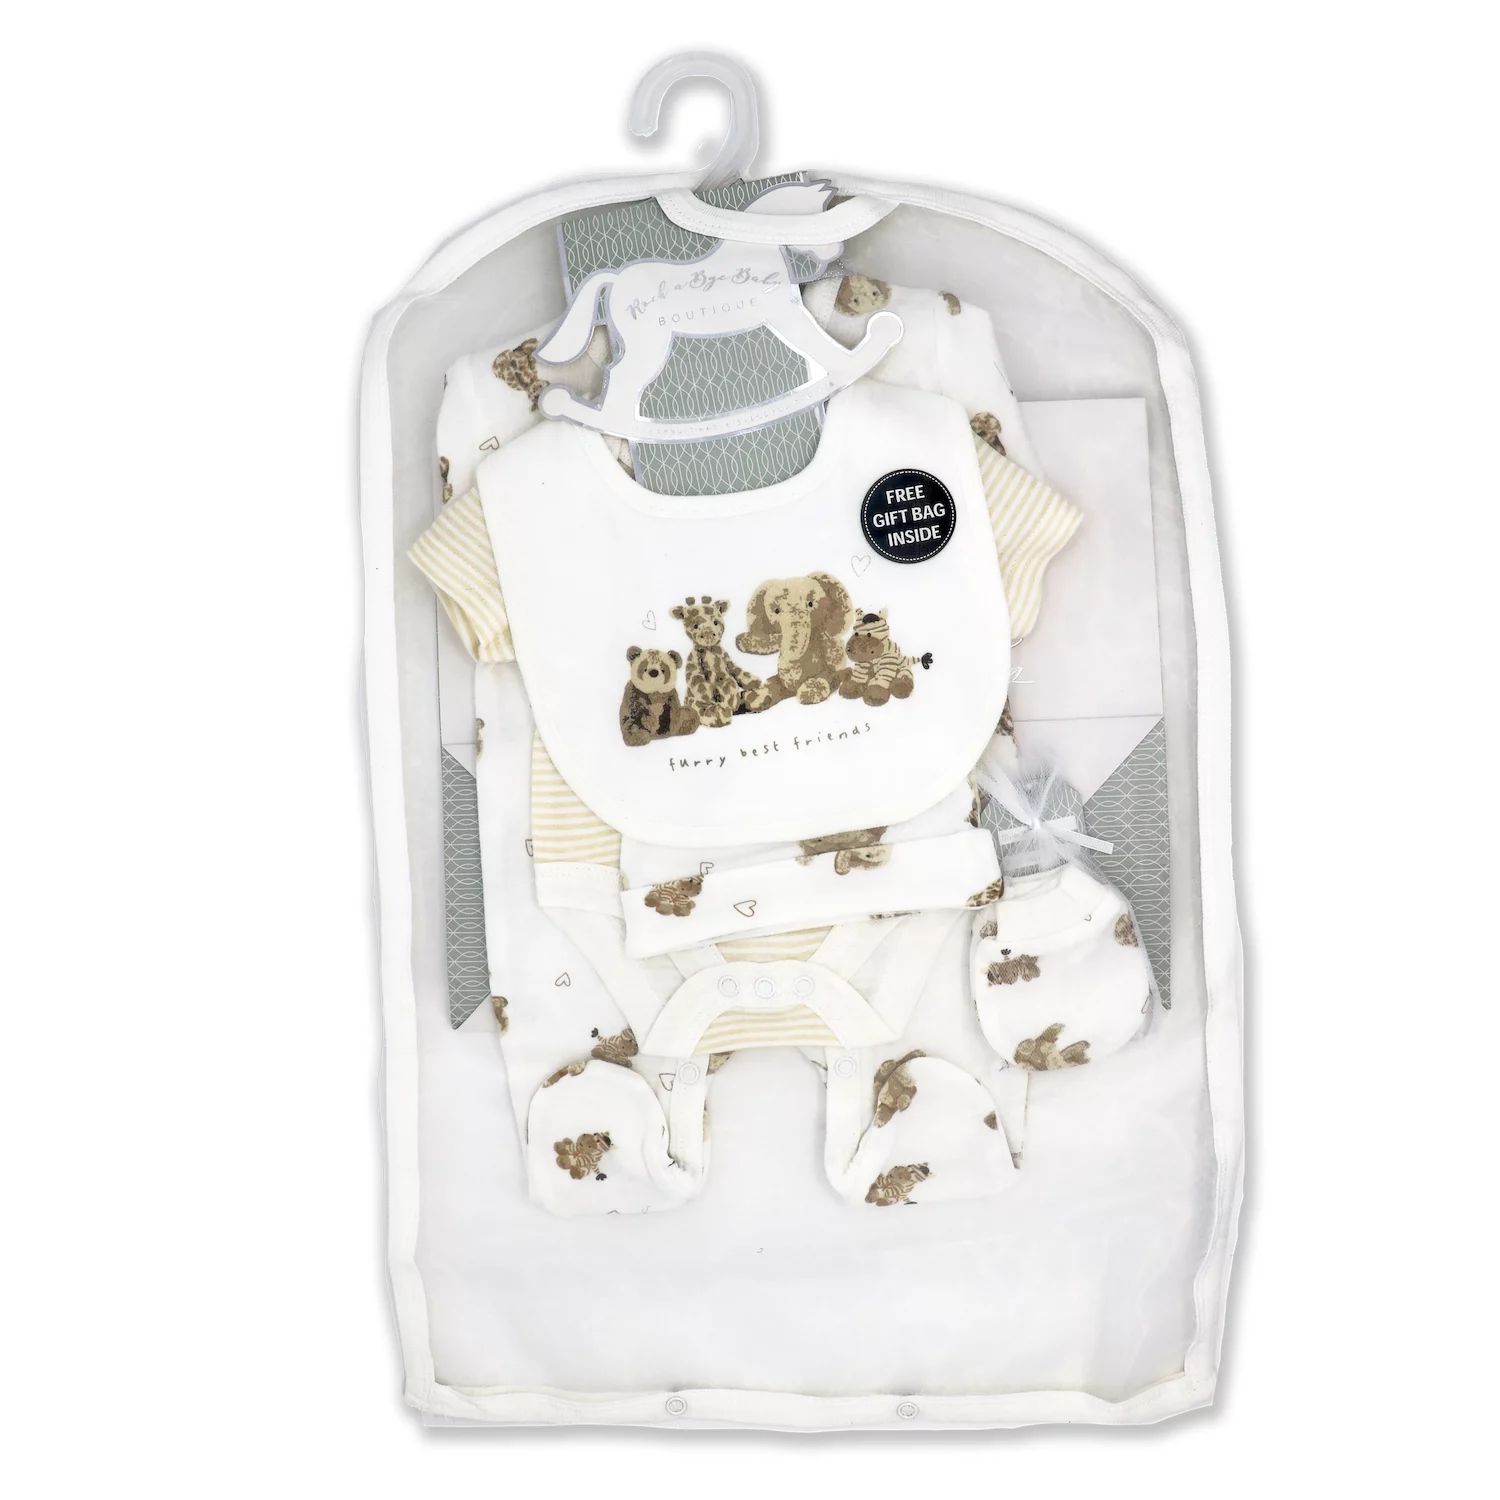 bye bye paris mother baby care bag hi̇gh quality warranty period month 12 Подарочный набор Furry Besties из 5 предметов для мальчиков и девочек в сетчатой ​​сумке Rock A Bye Baby Boutique